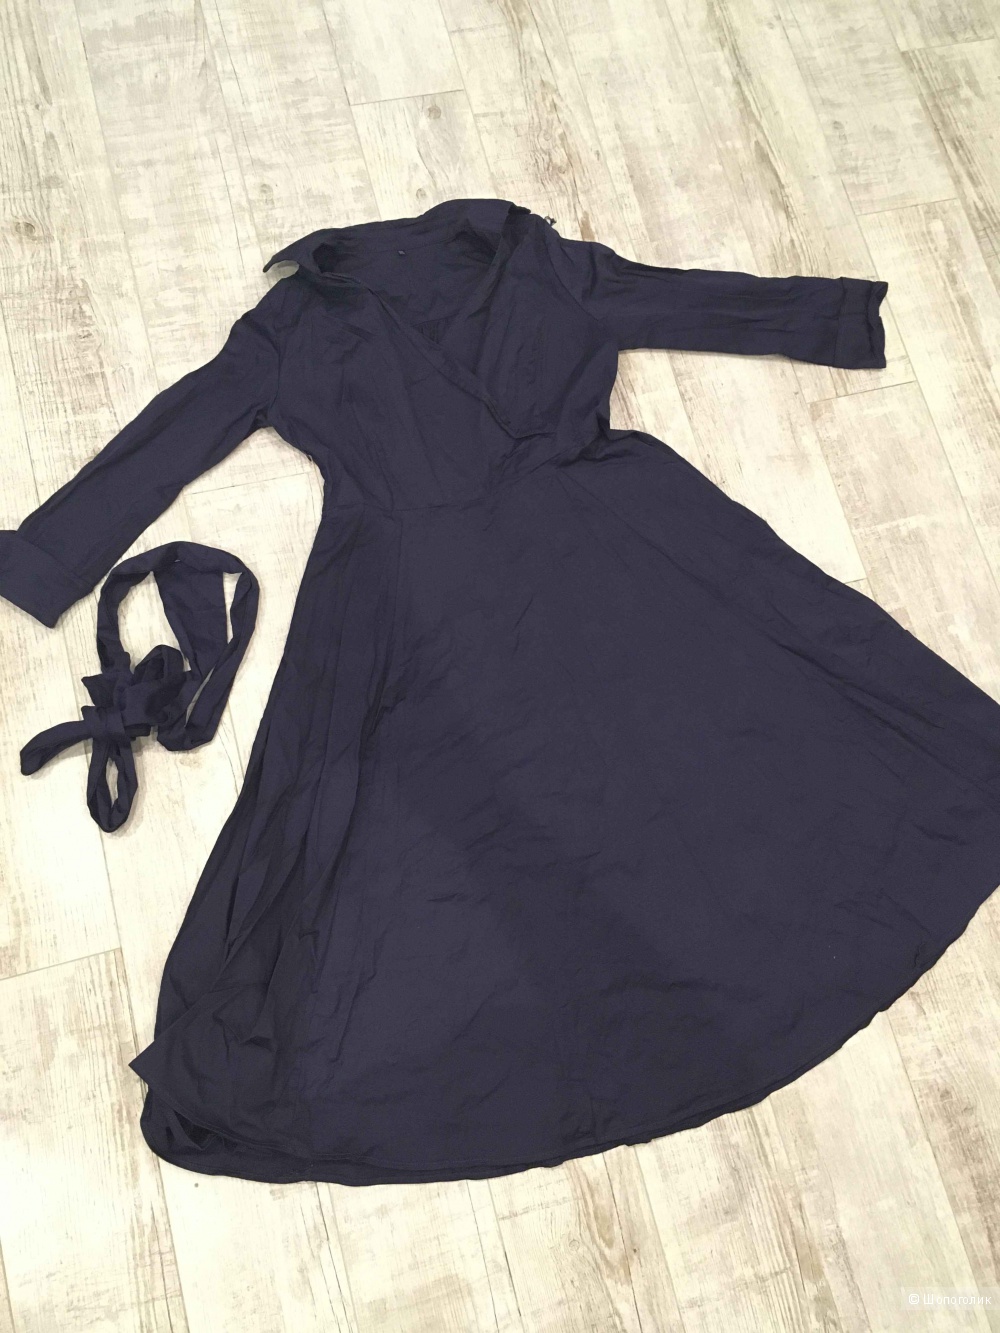 Хлопковое платье с запахом темно-синее, 52 размер